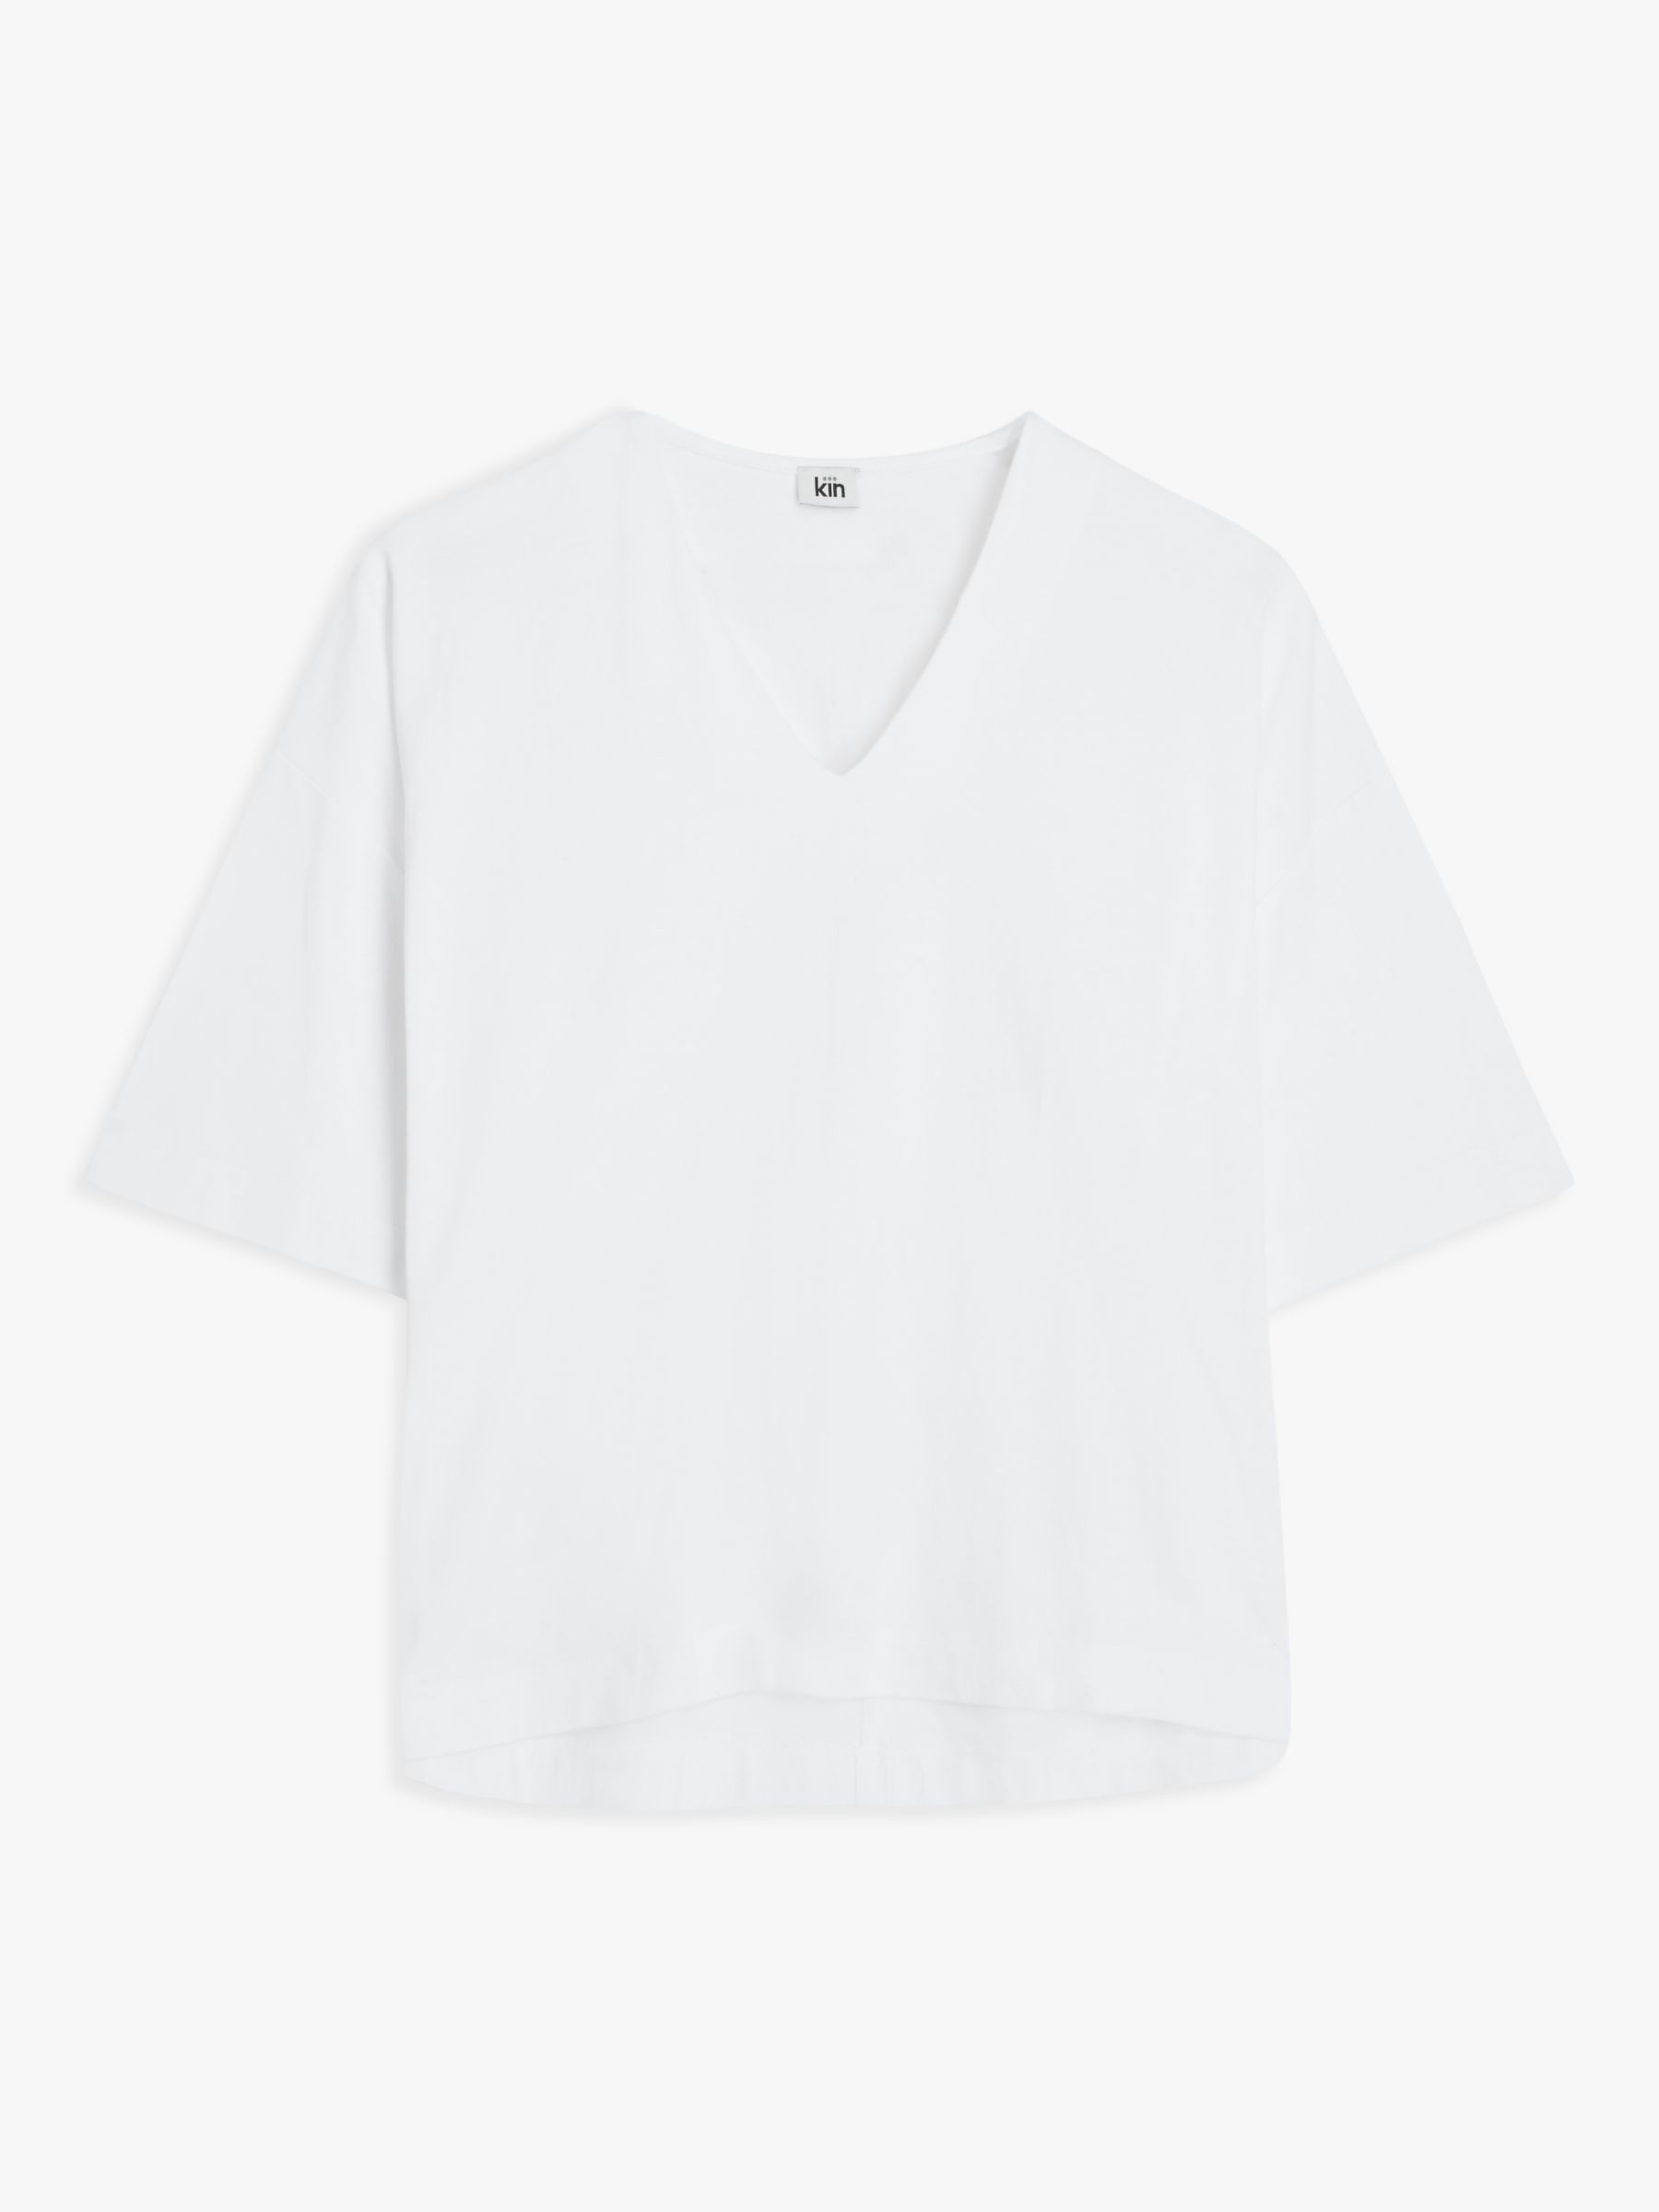 Kin Plain Oversized V-Neck T-Shirt, White